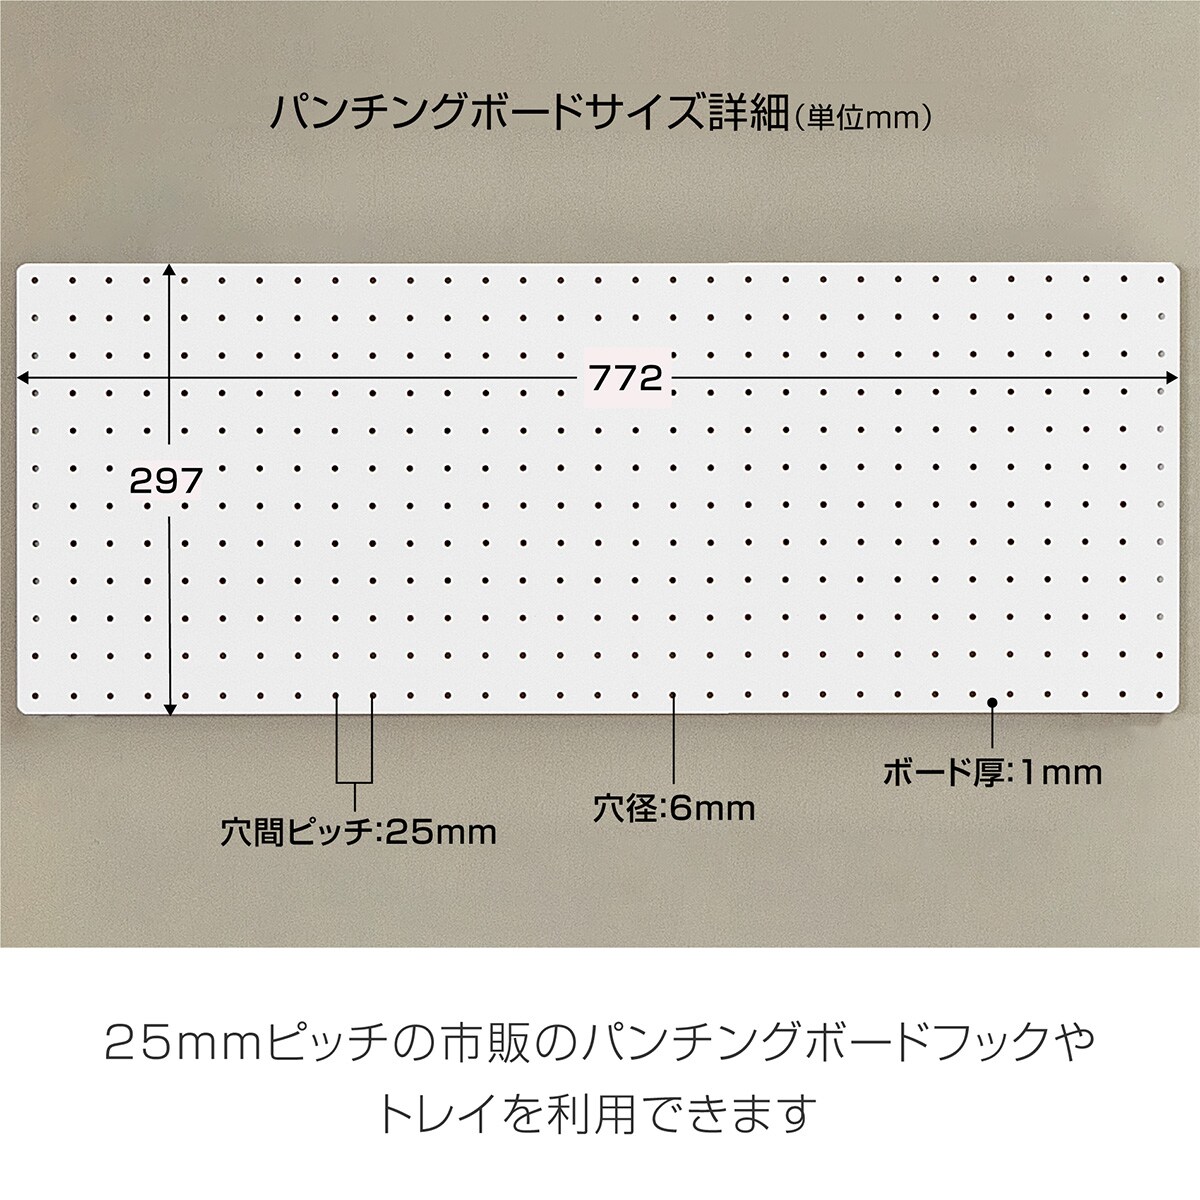 マグネット対応可能なスチールパンチングボード(77.2×29.7cm ホワイト